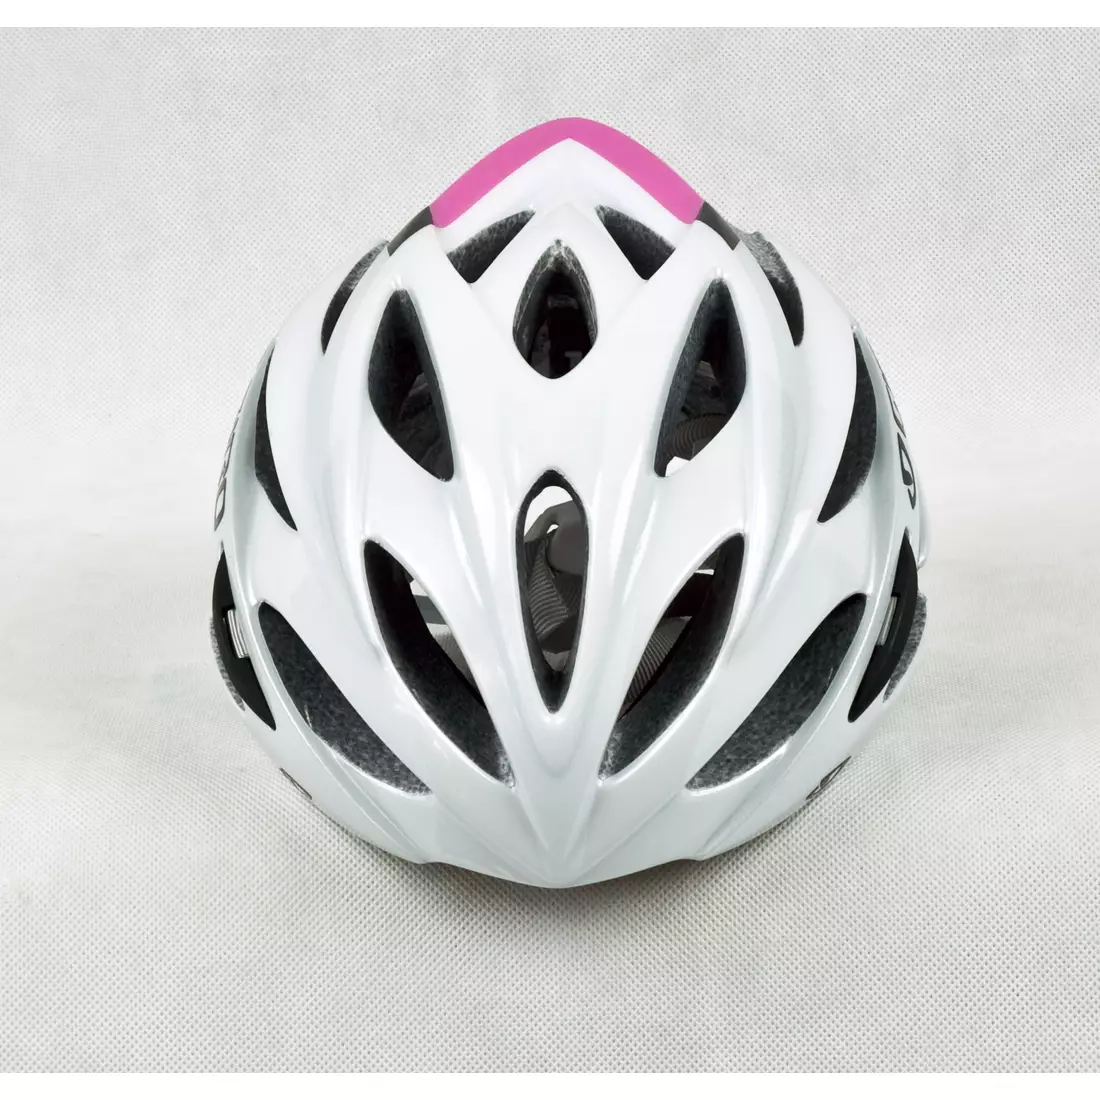 Casca de bicicleta dama GIRO SONNET, alb si roz